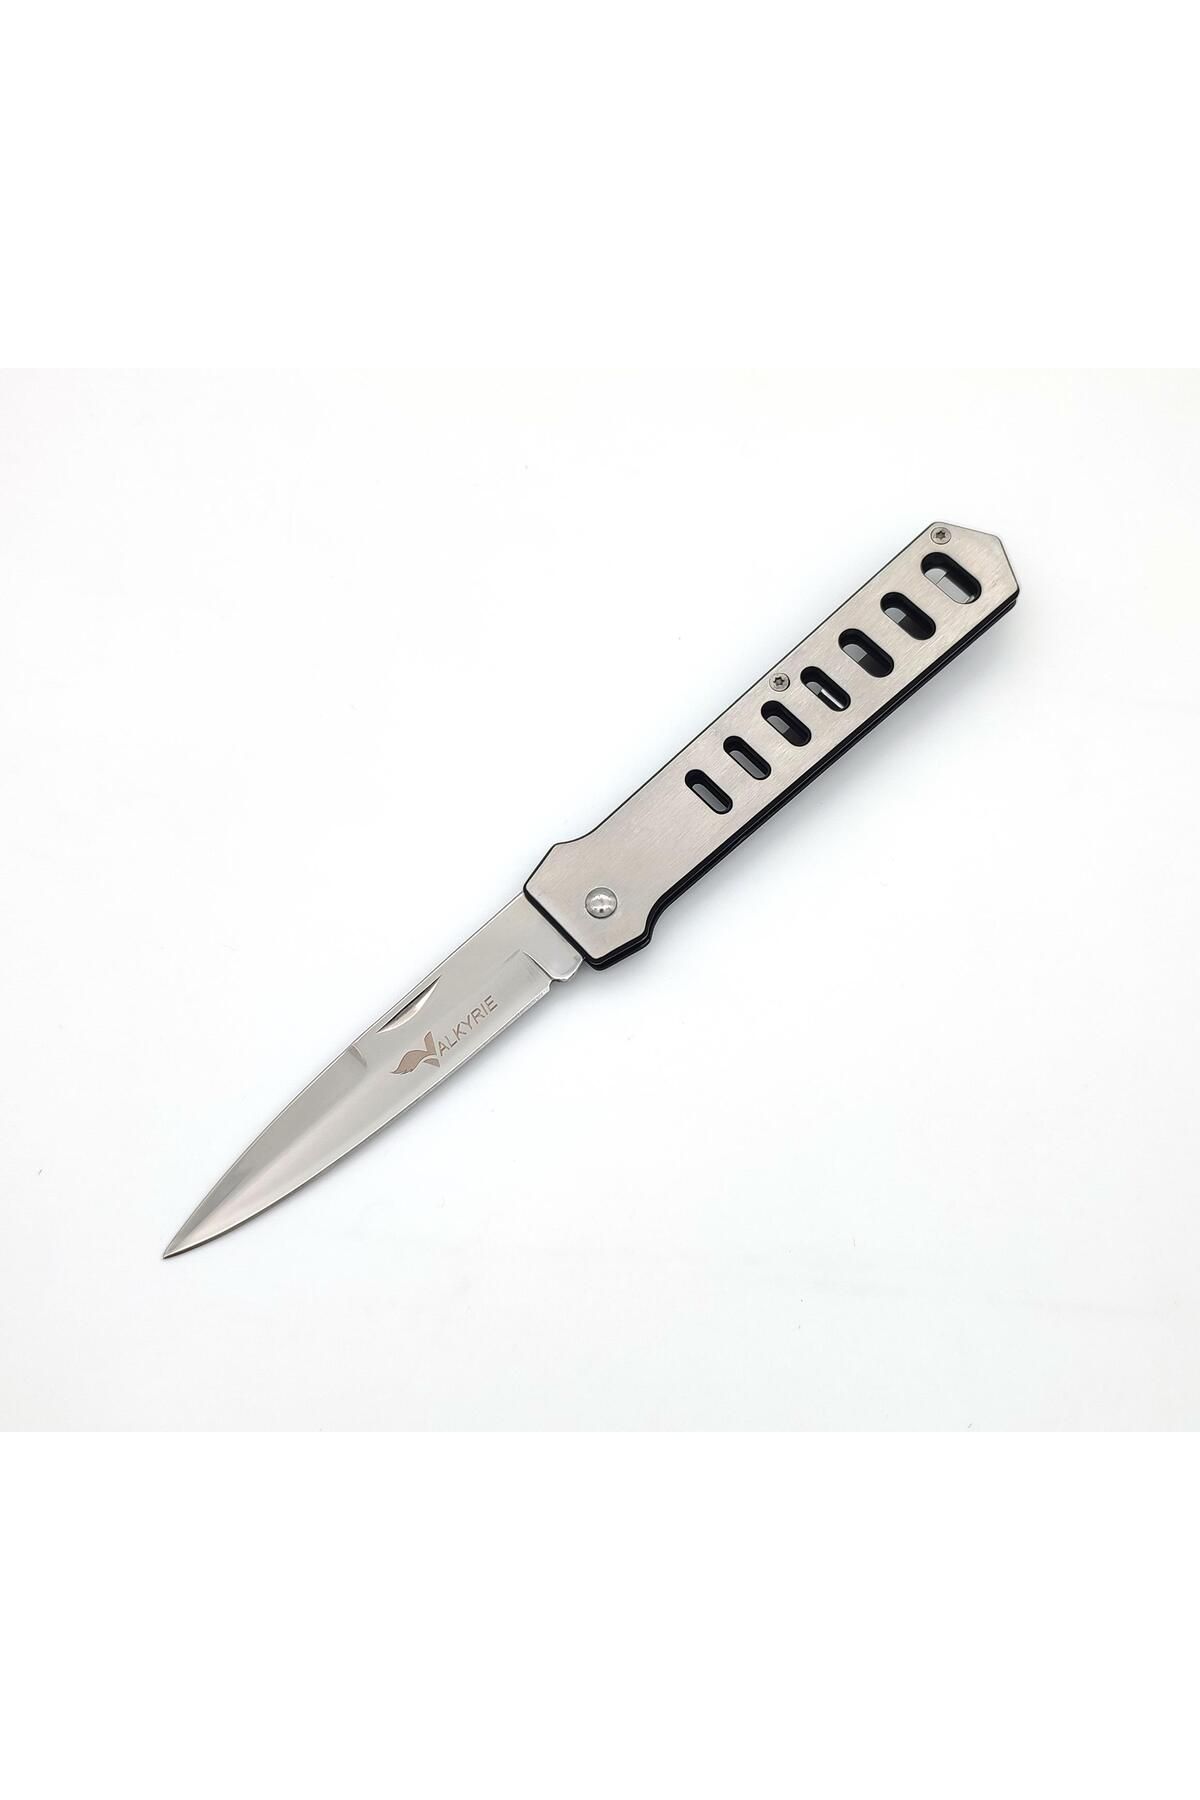 valkyrie Zd011 Outdoor Katlanbilir Kamp Bıçağı